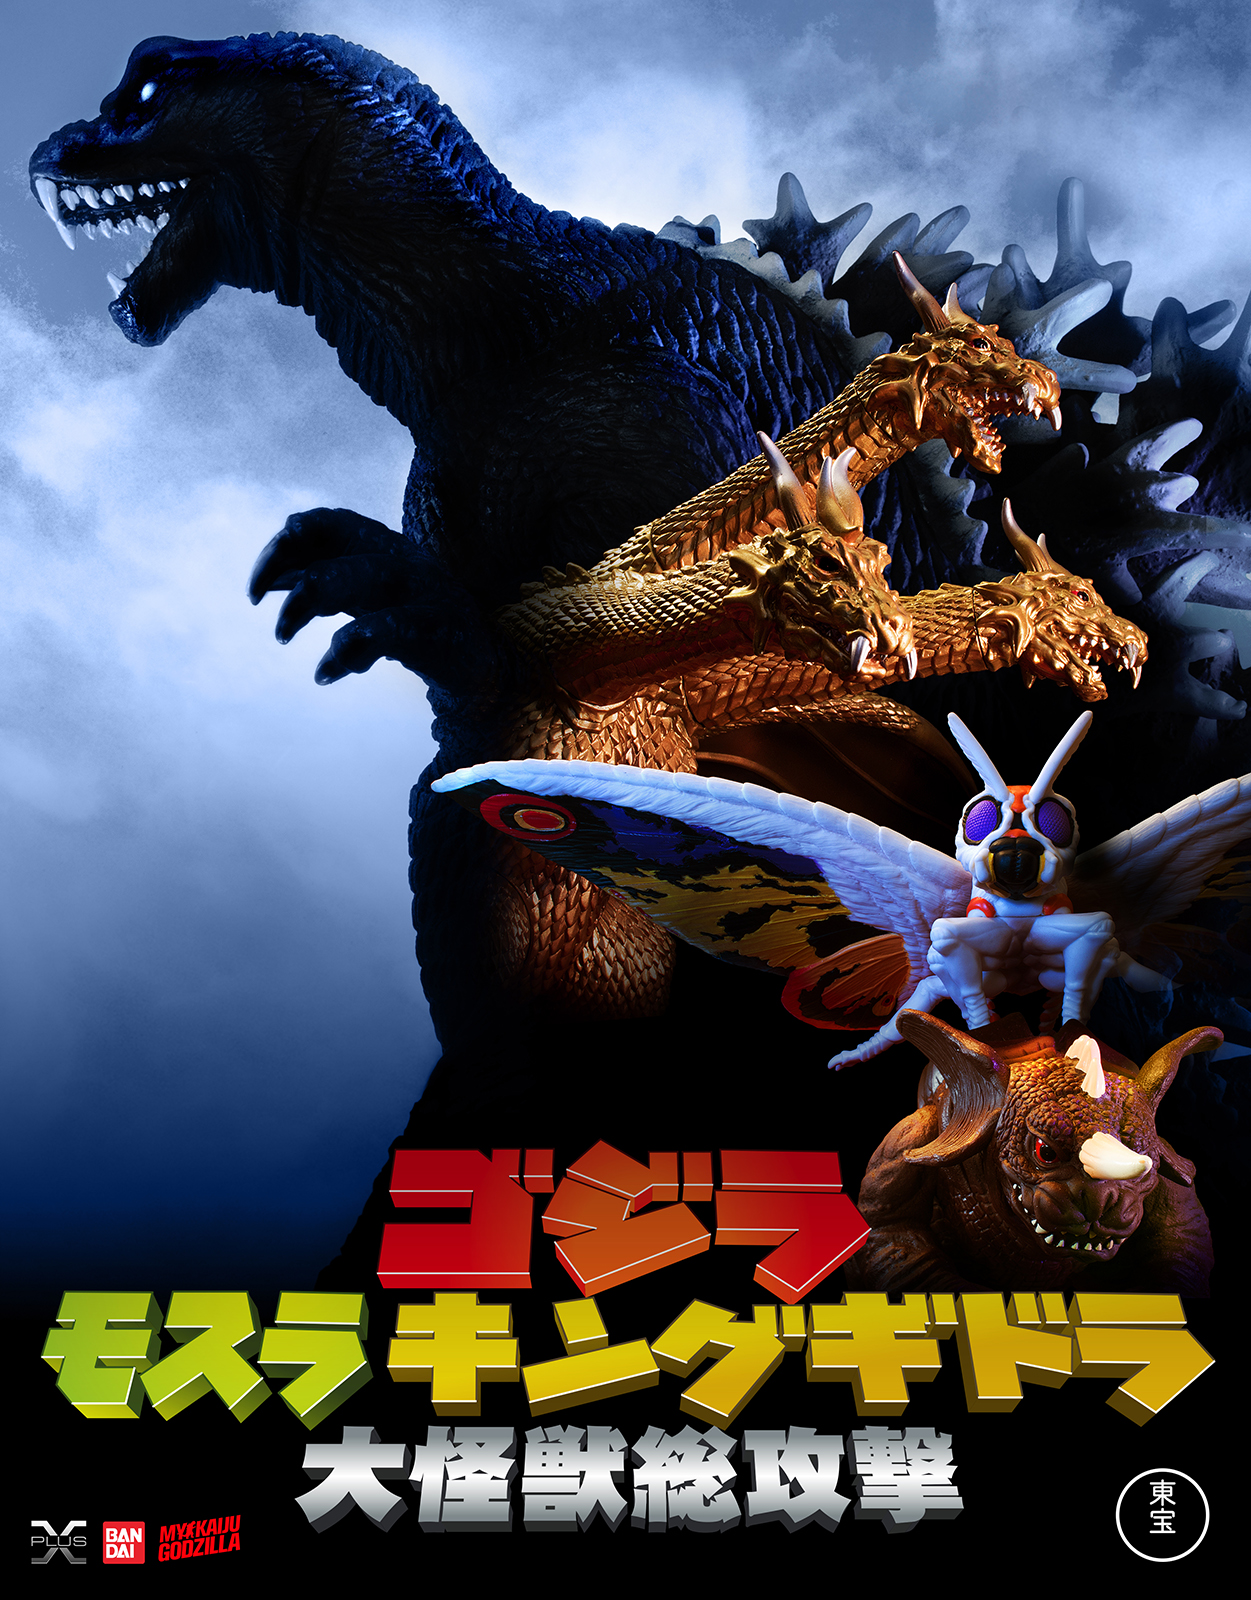 Godzilla Vs Hedorah Gojira tai Hedor Godzilla vs the